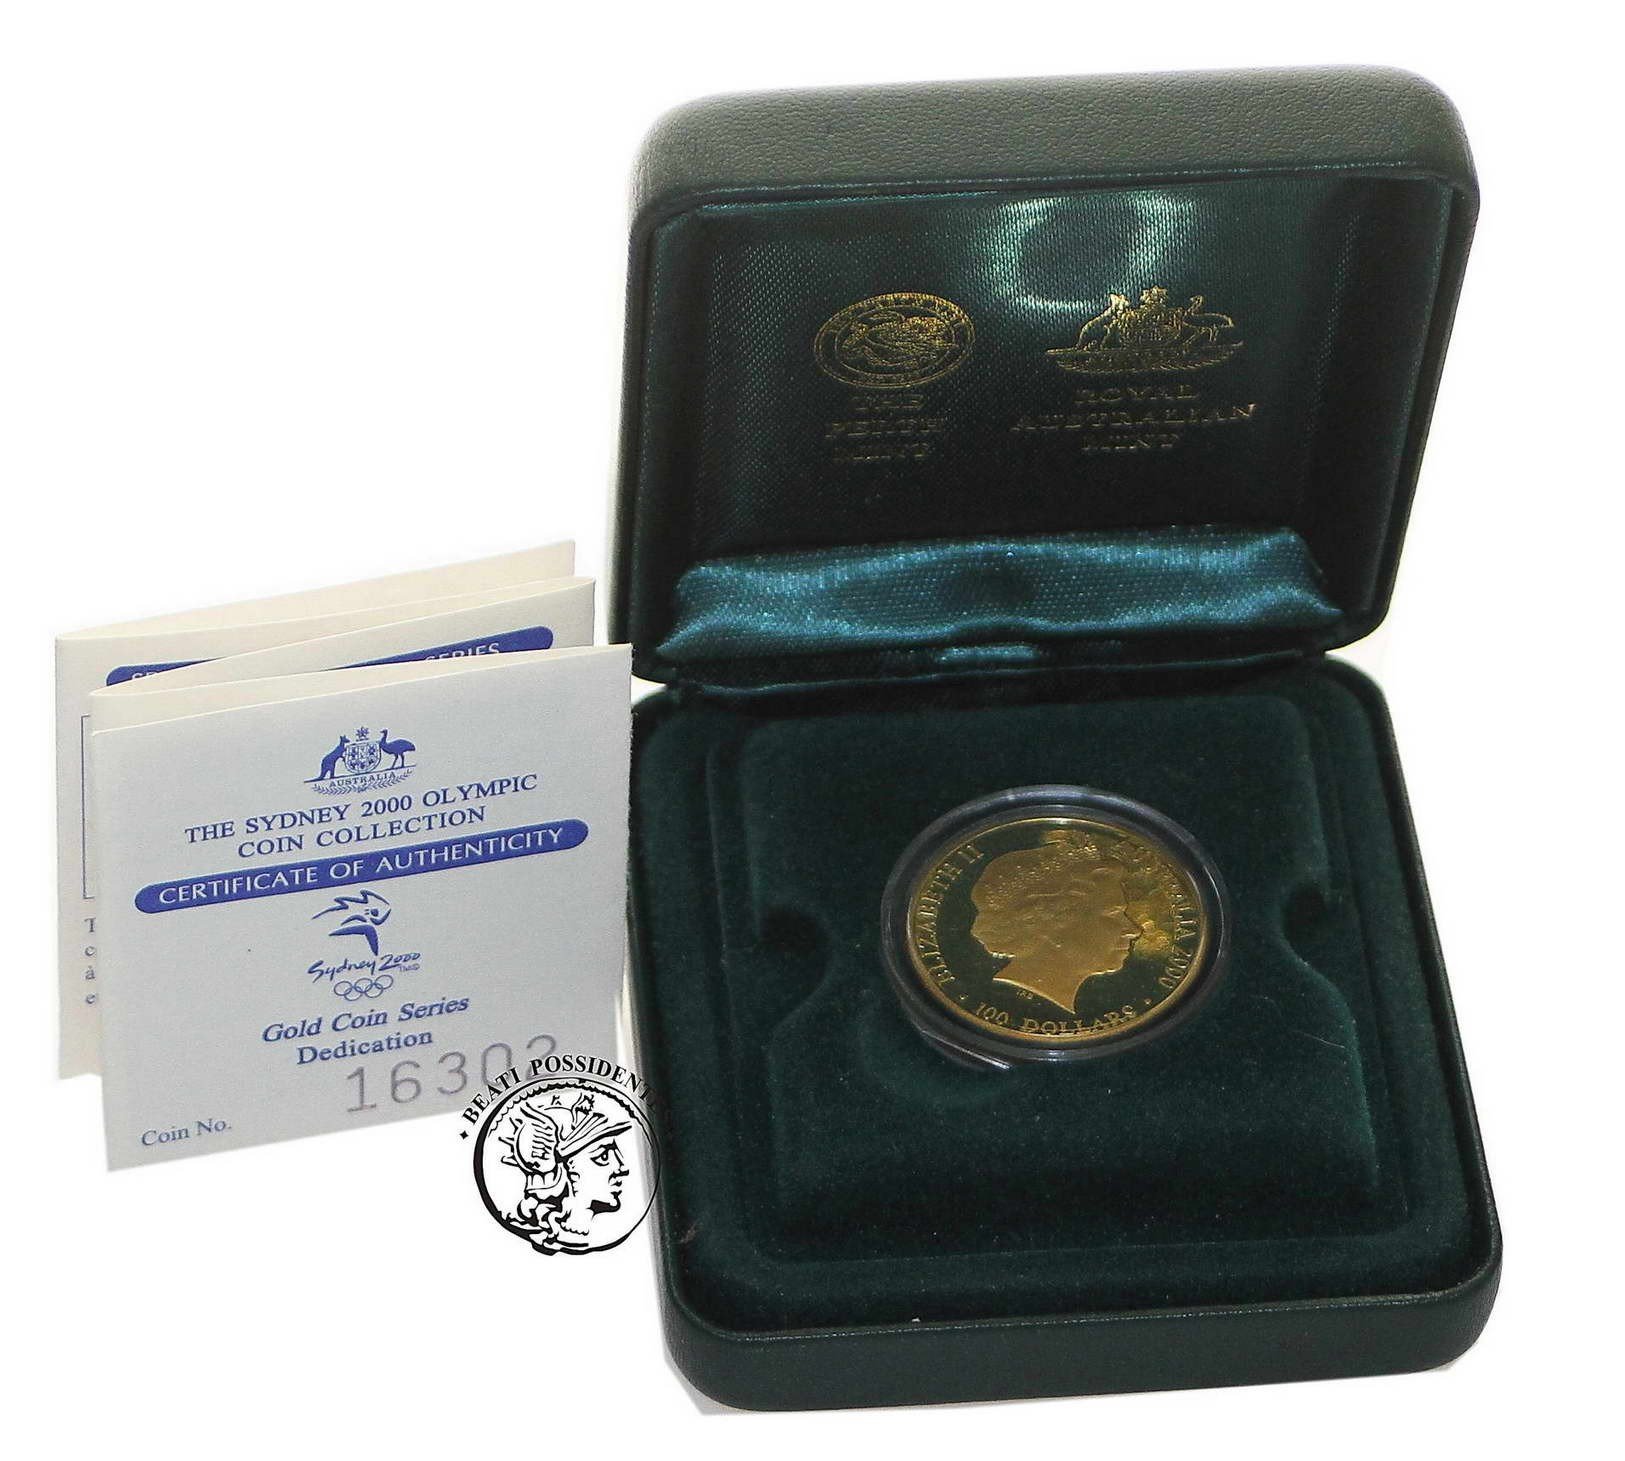 Australia Elżbieta II 100 Dolarów 2000 Igrzyska Sydney st.L-/L stempel lustrzany